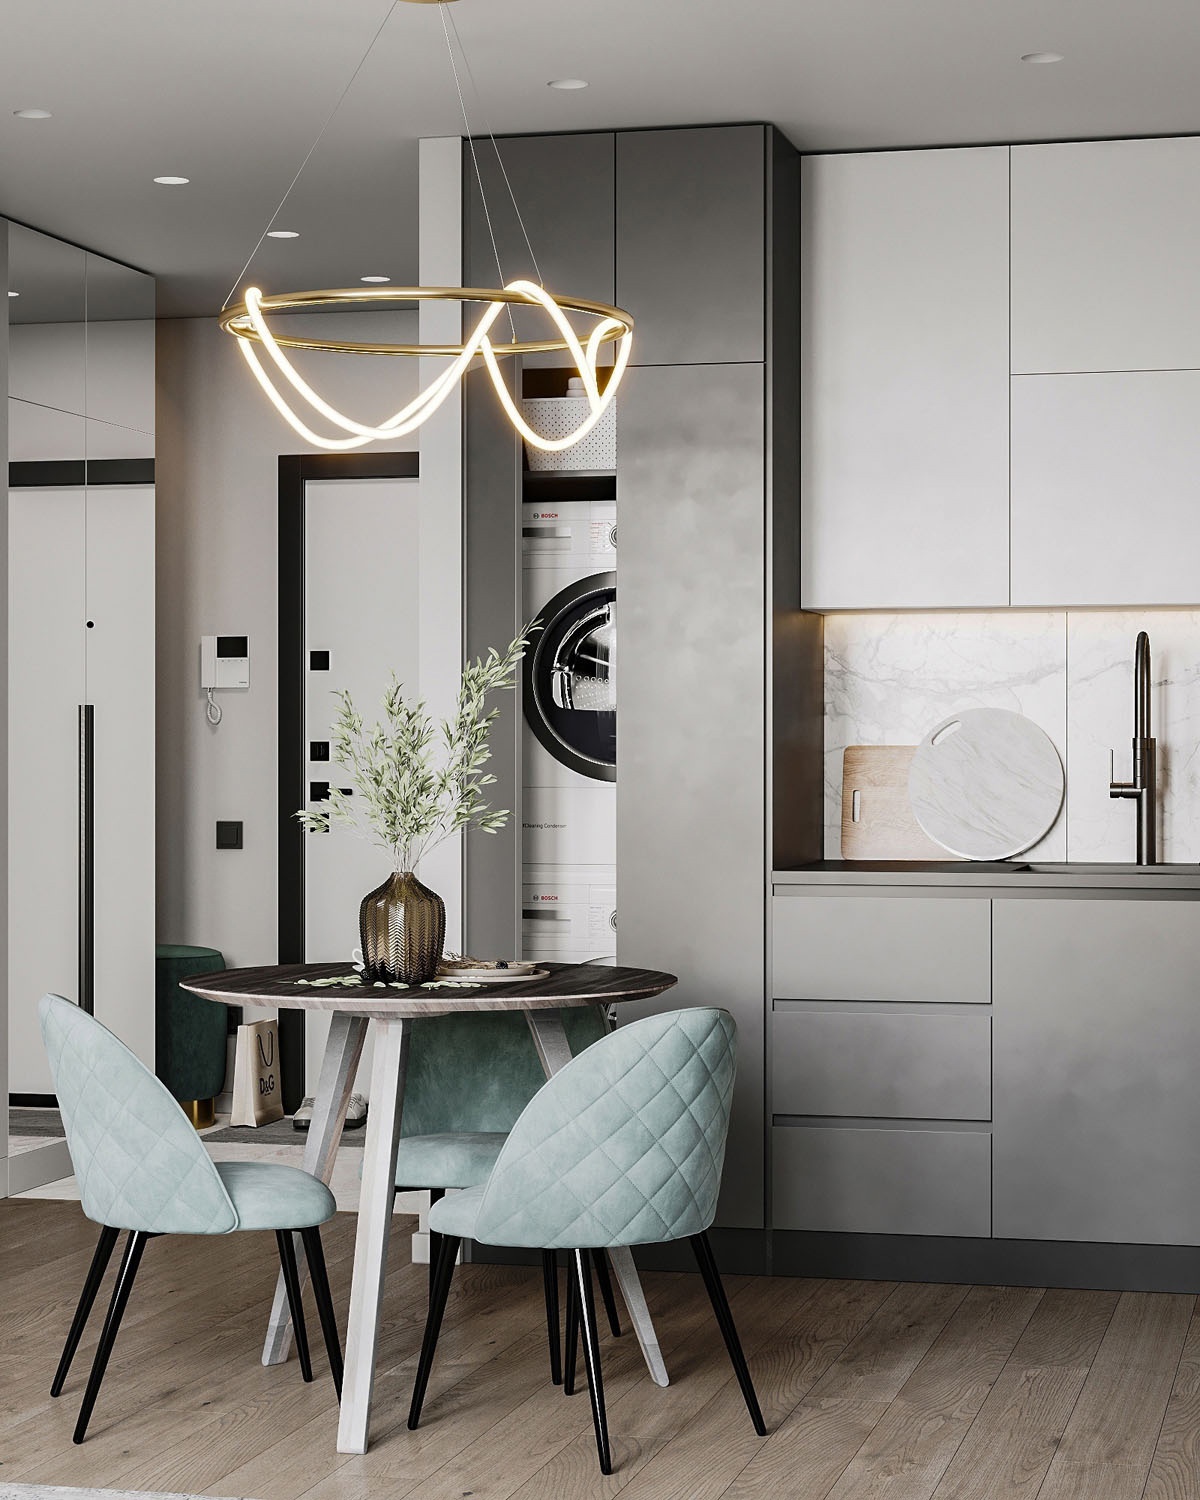 Дизайн-проект квартиры 29 кв.м идеи для дома,интерьер и дизайн